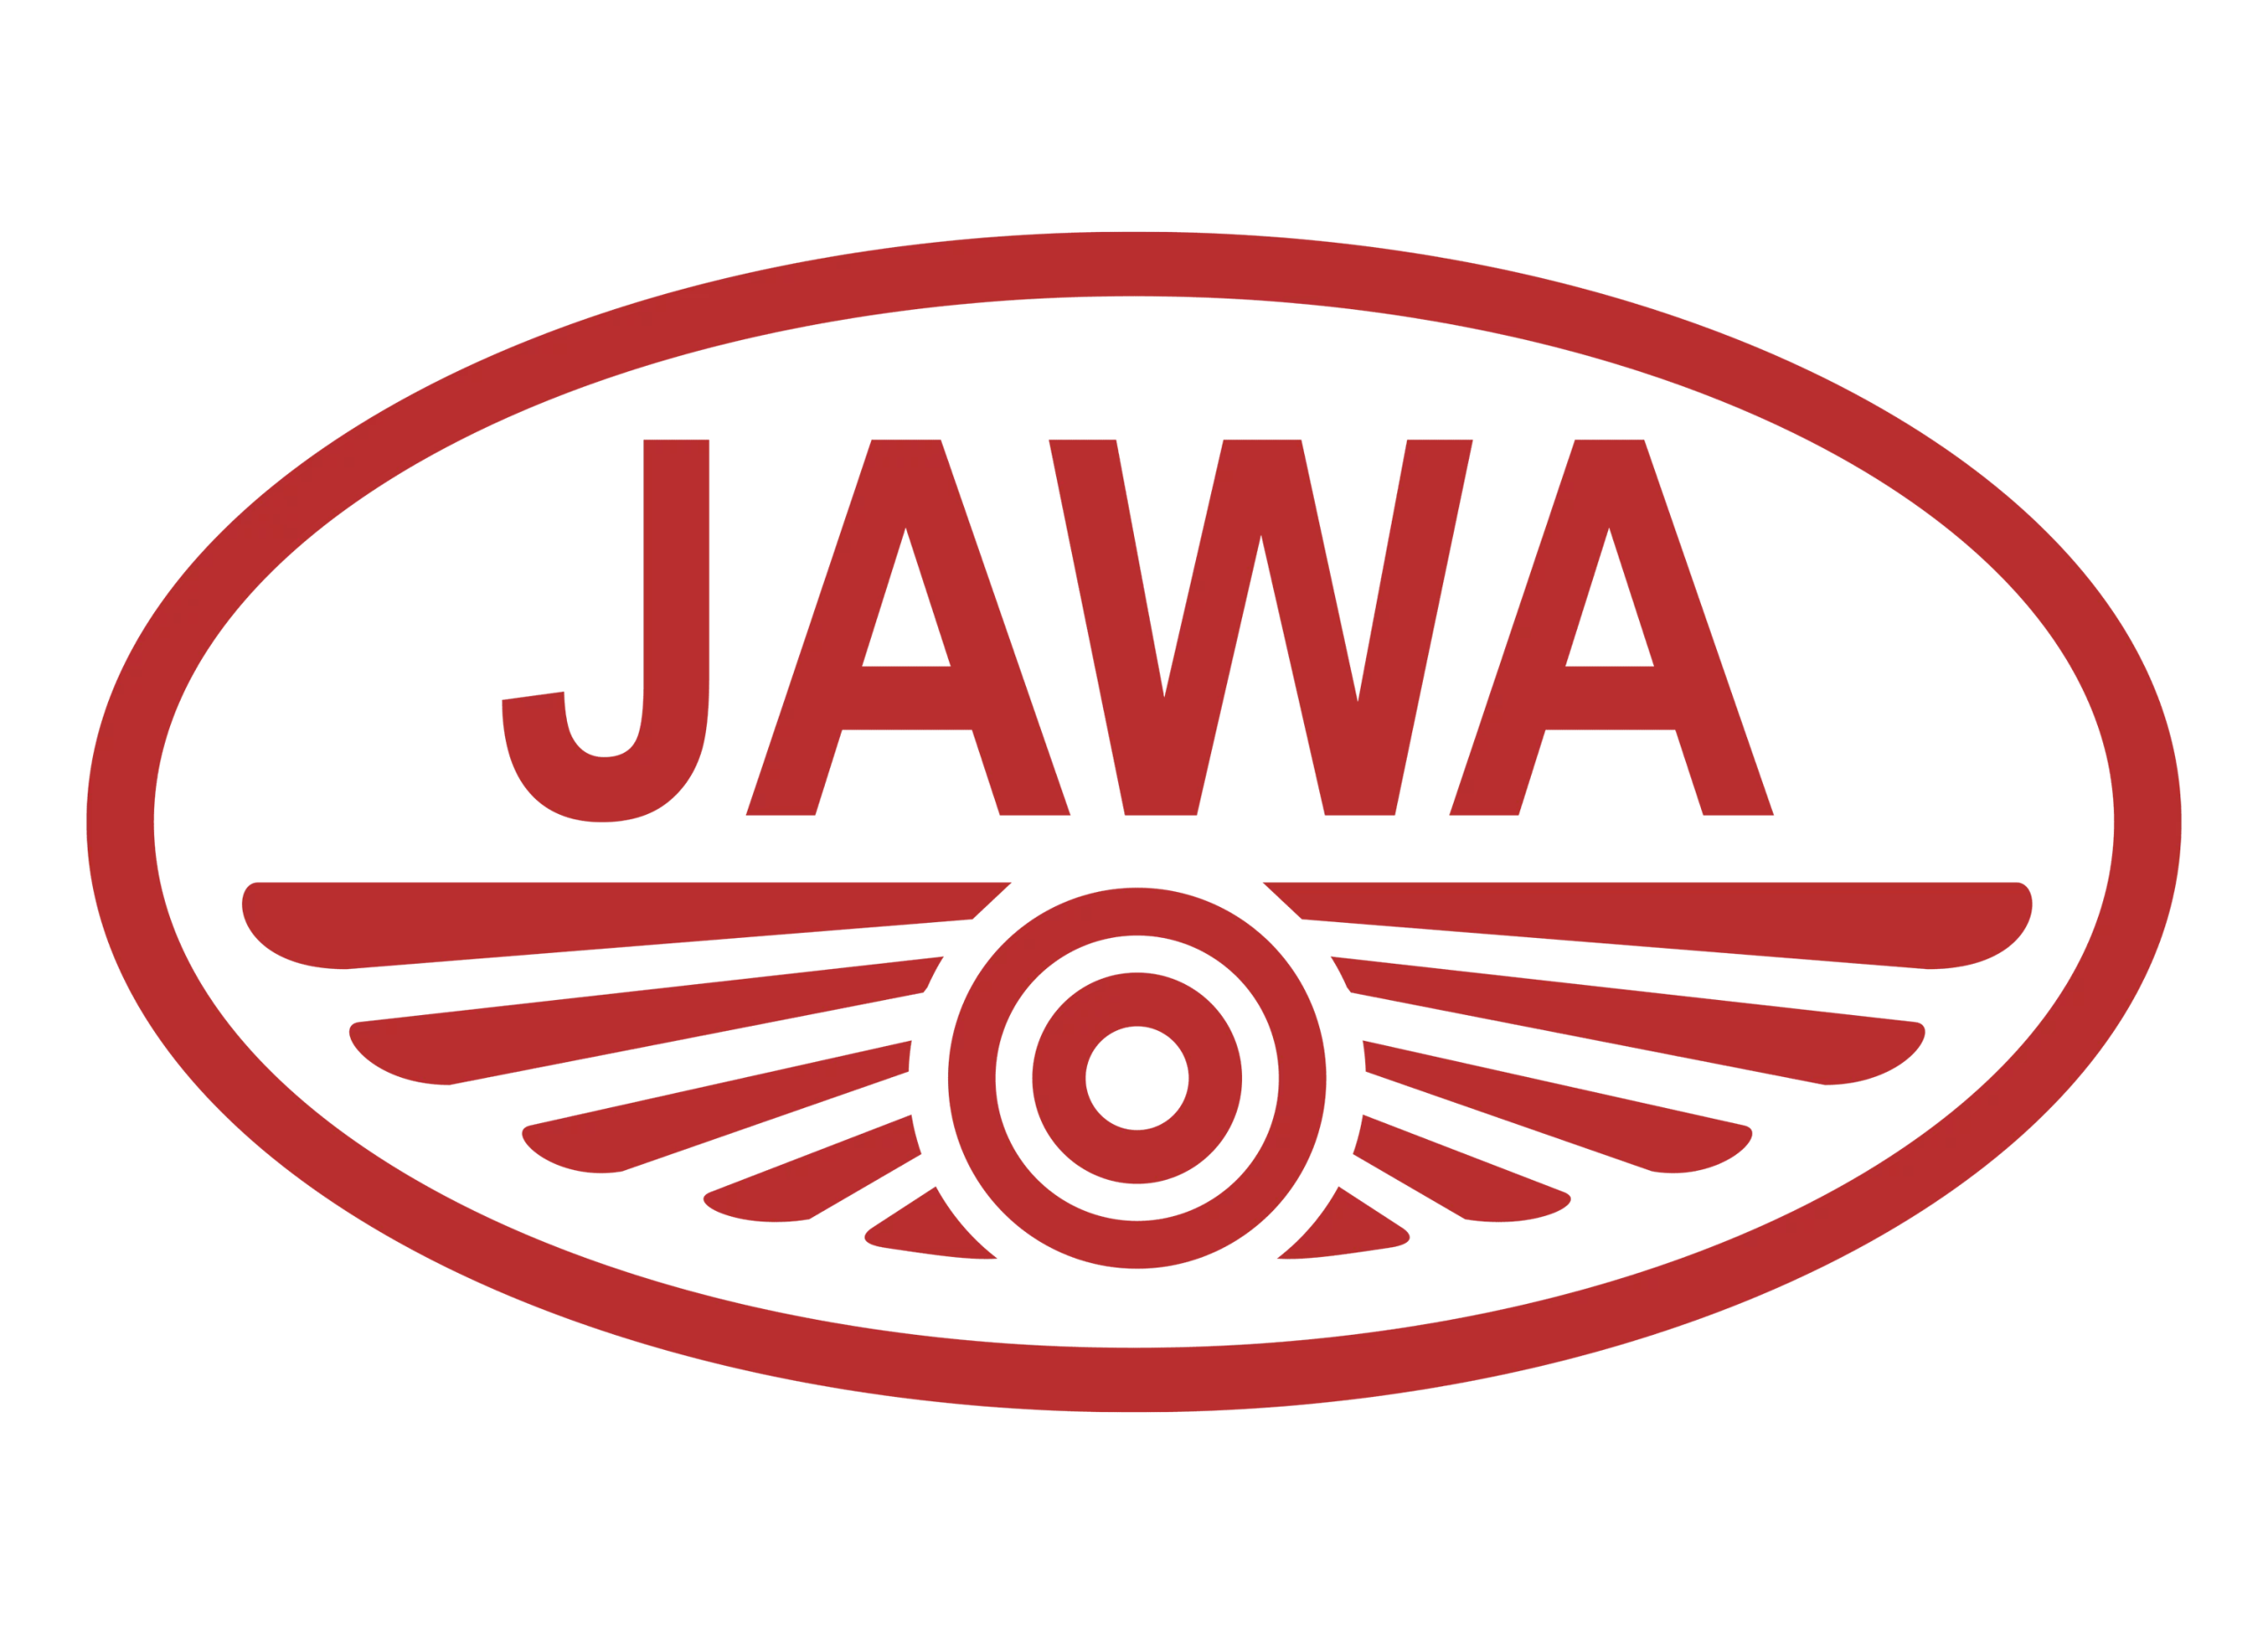 Jawa logo 1997-present